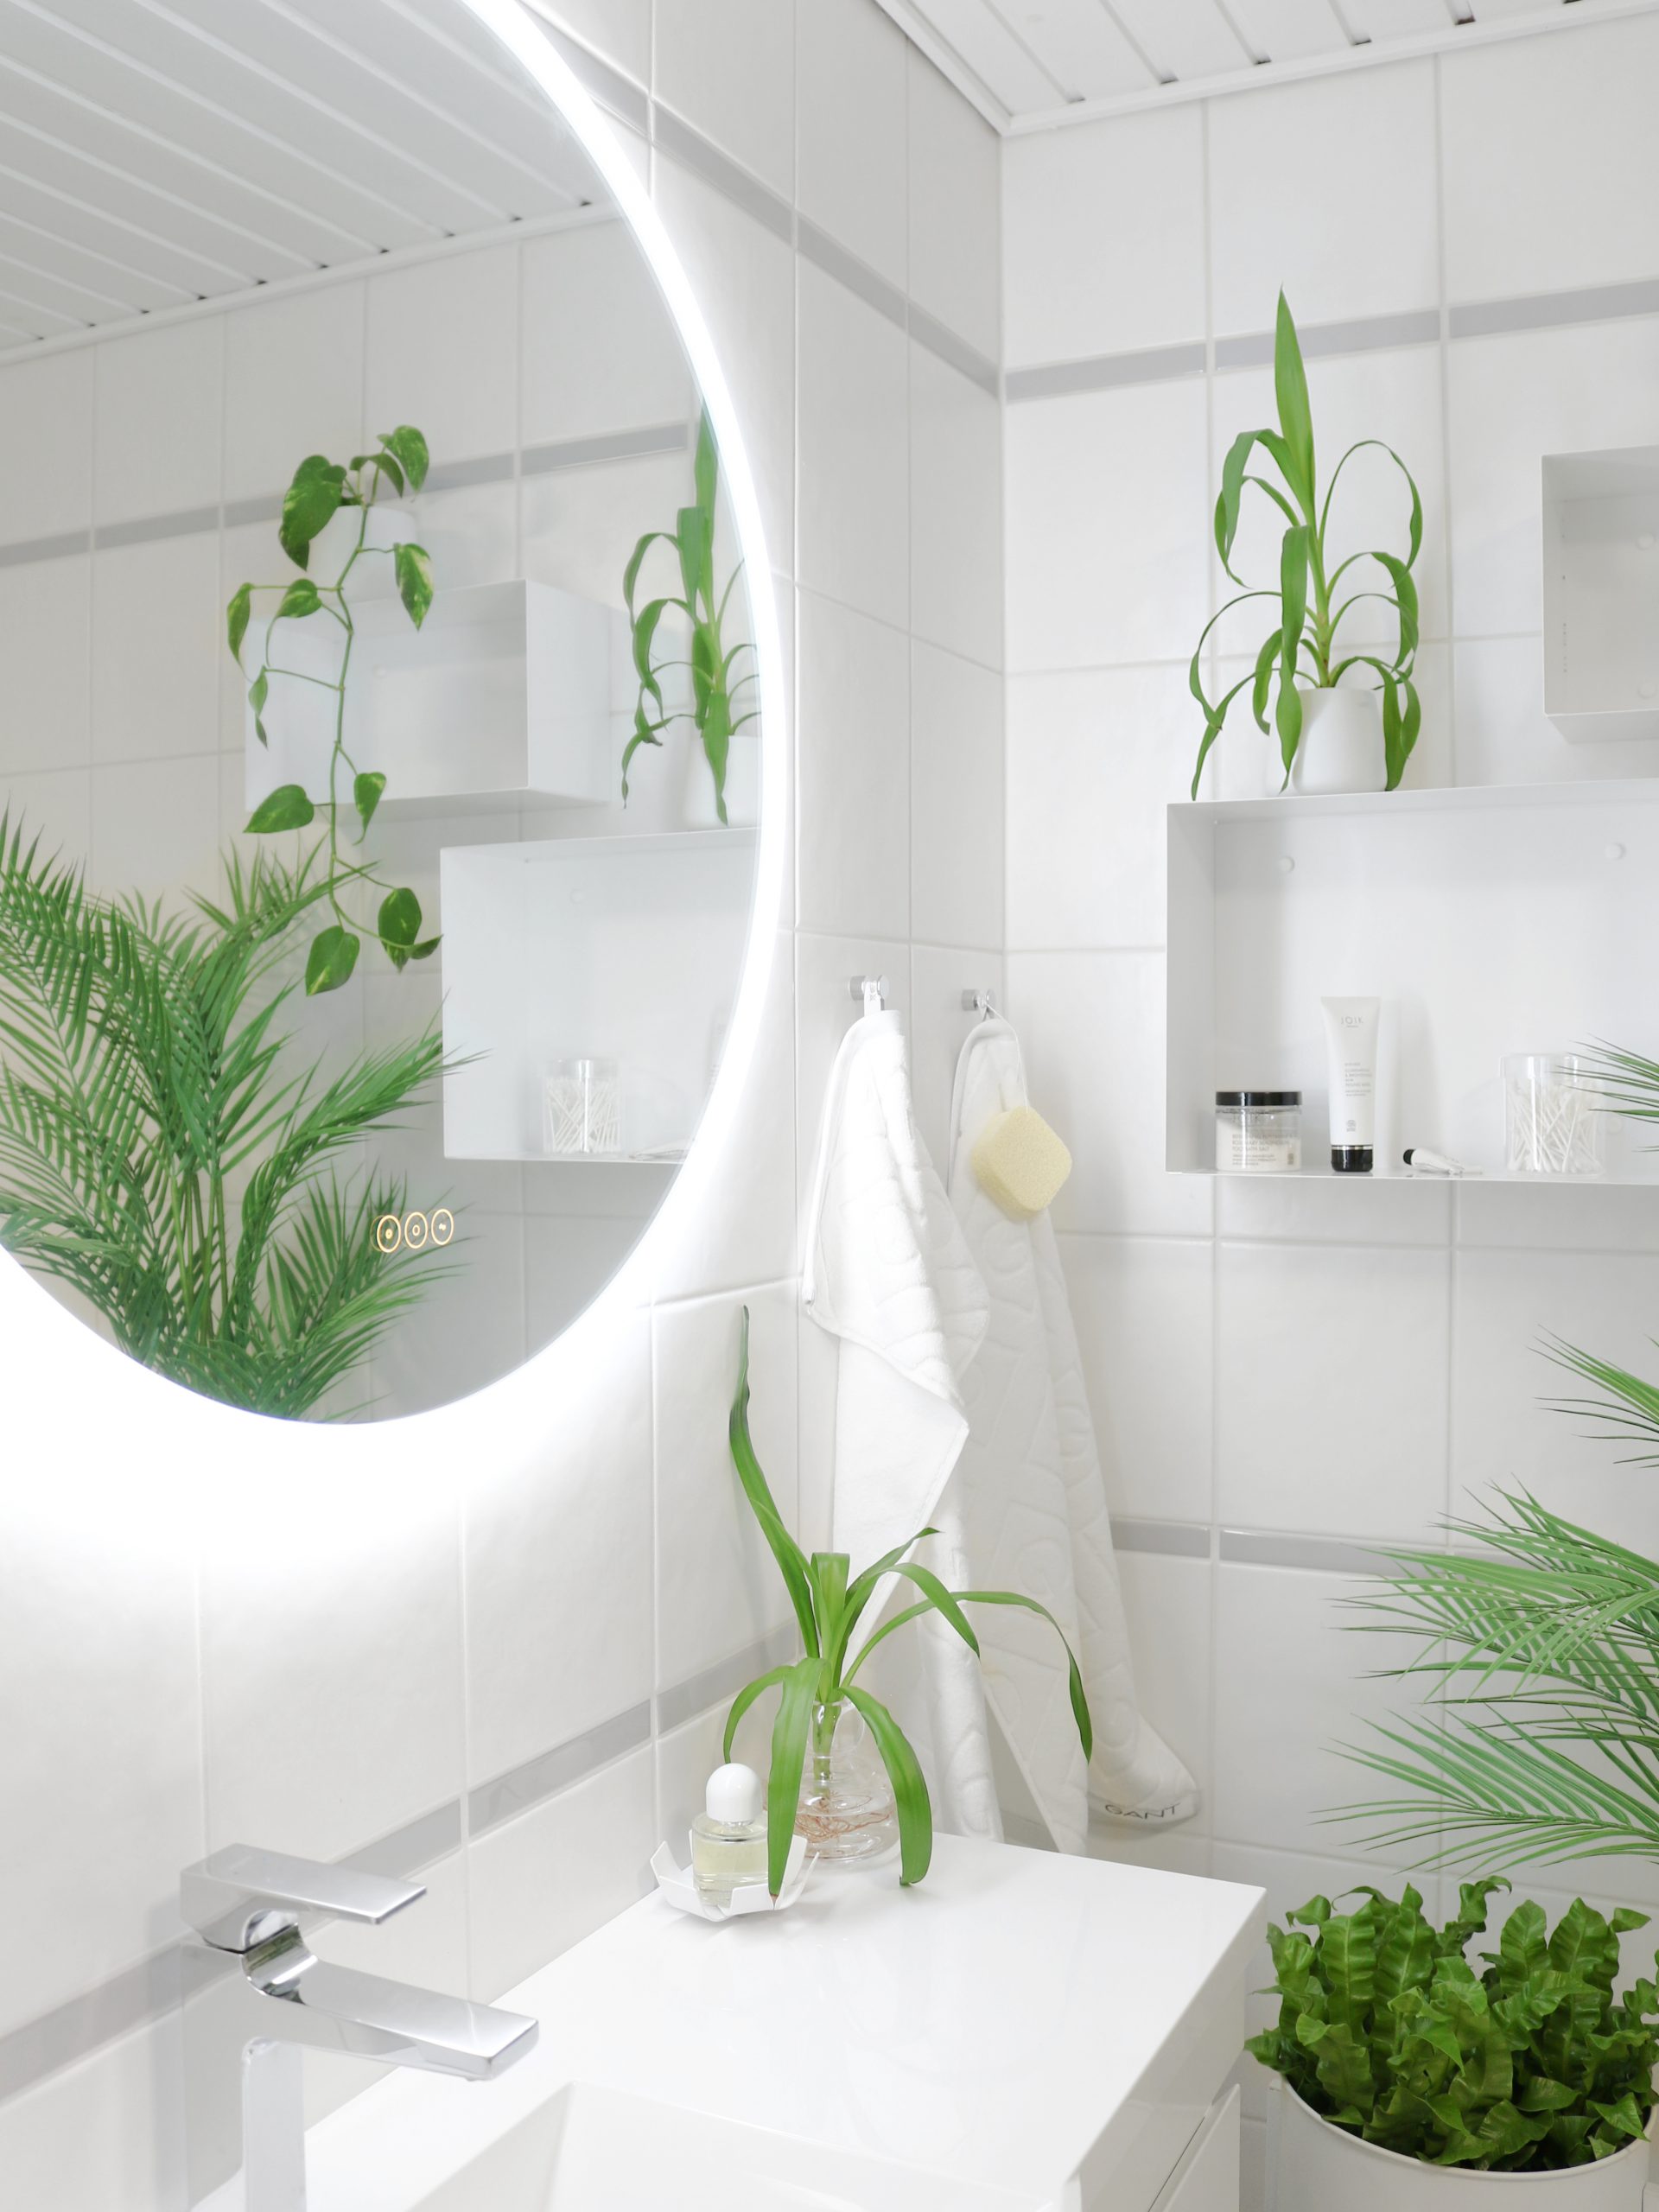 Viherkasvit kylpyhuoneessa - Täydellinen väripaletti valkoinen, vihreä ja harmaa - Sisustusblogi Omakotivalkoinen